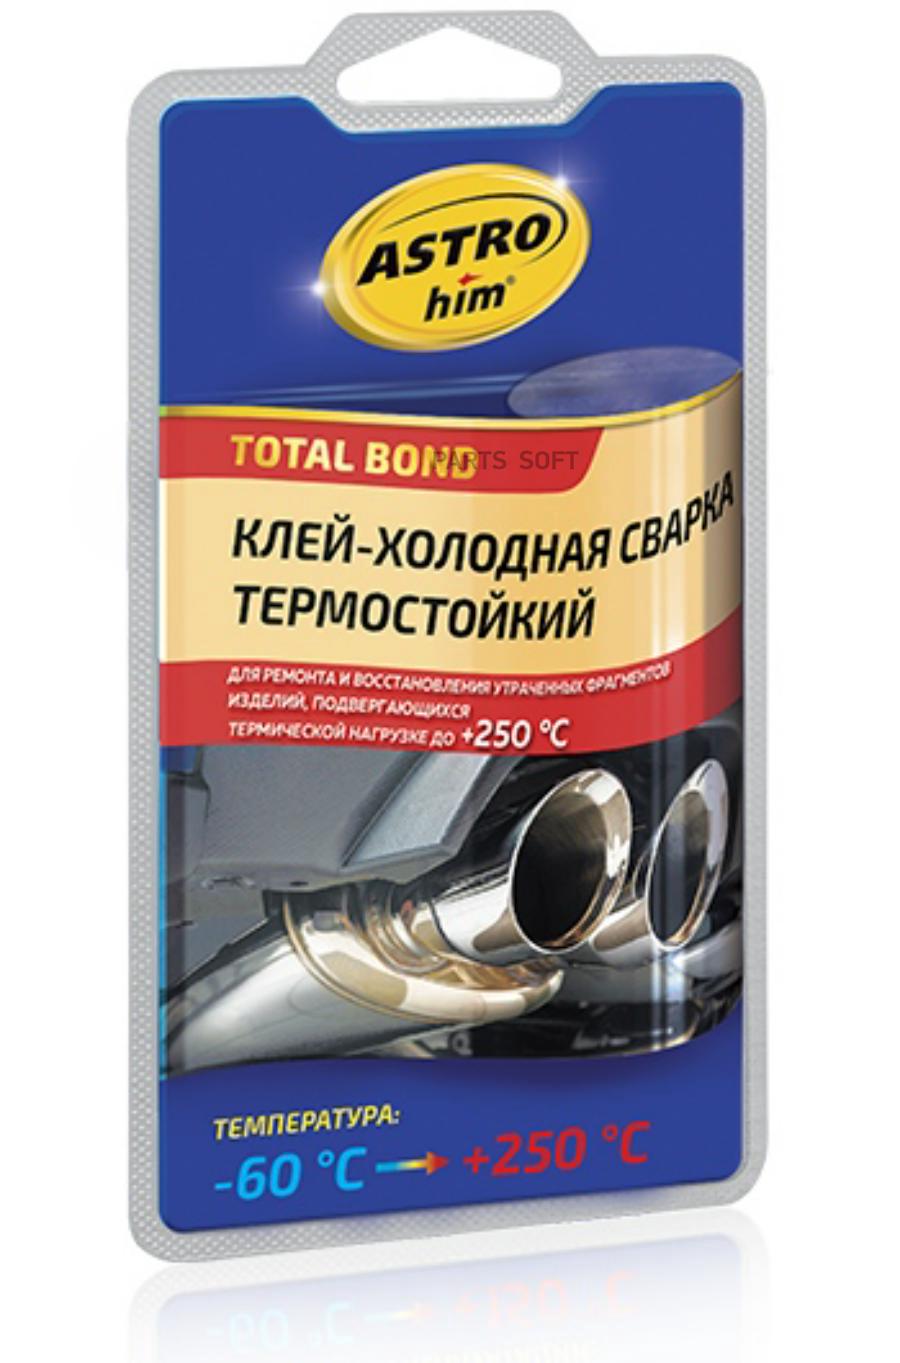 ASTROHIM Клейхолодная сварка термостойкий, серия Total Bond, блистер 55 г ASTROhim AC9315